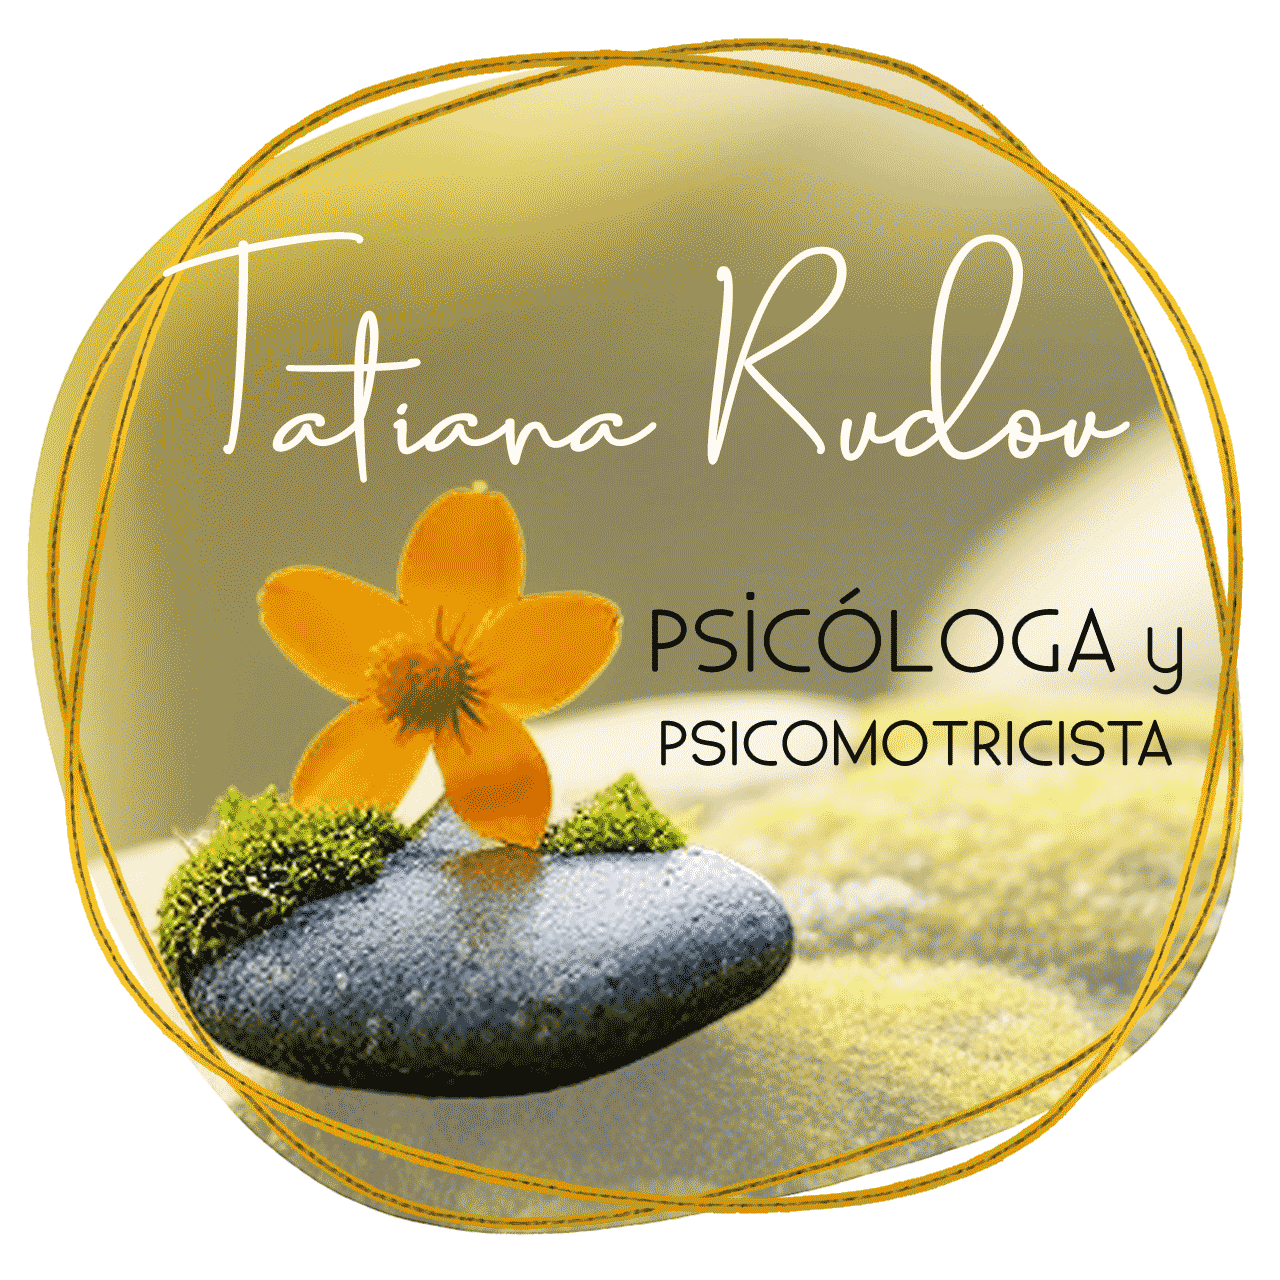 Tatiana Rudov Lic. en Psicología y Psicomotricidad Educativa